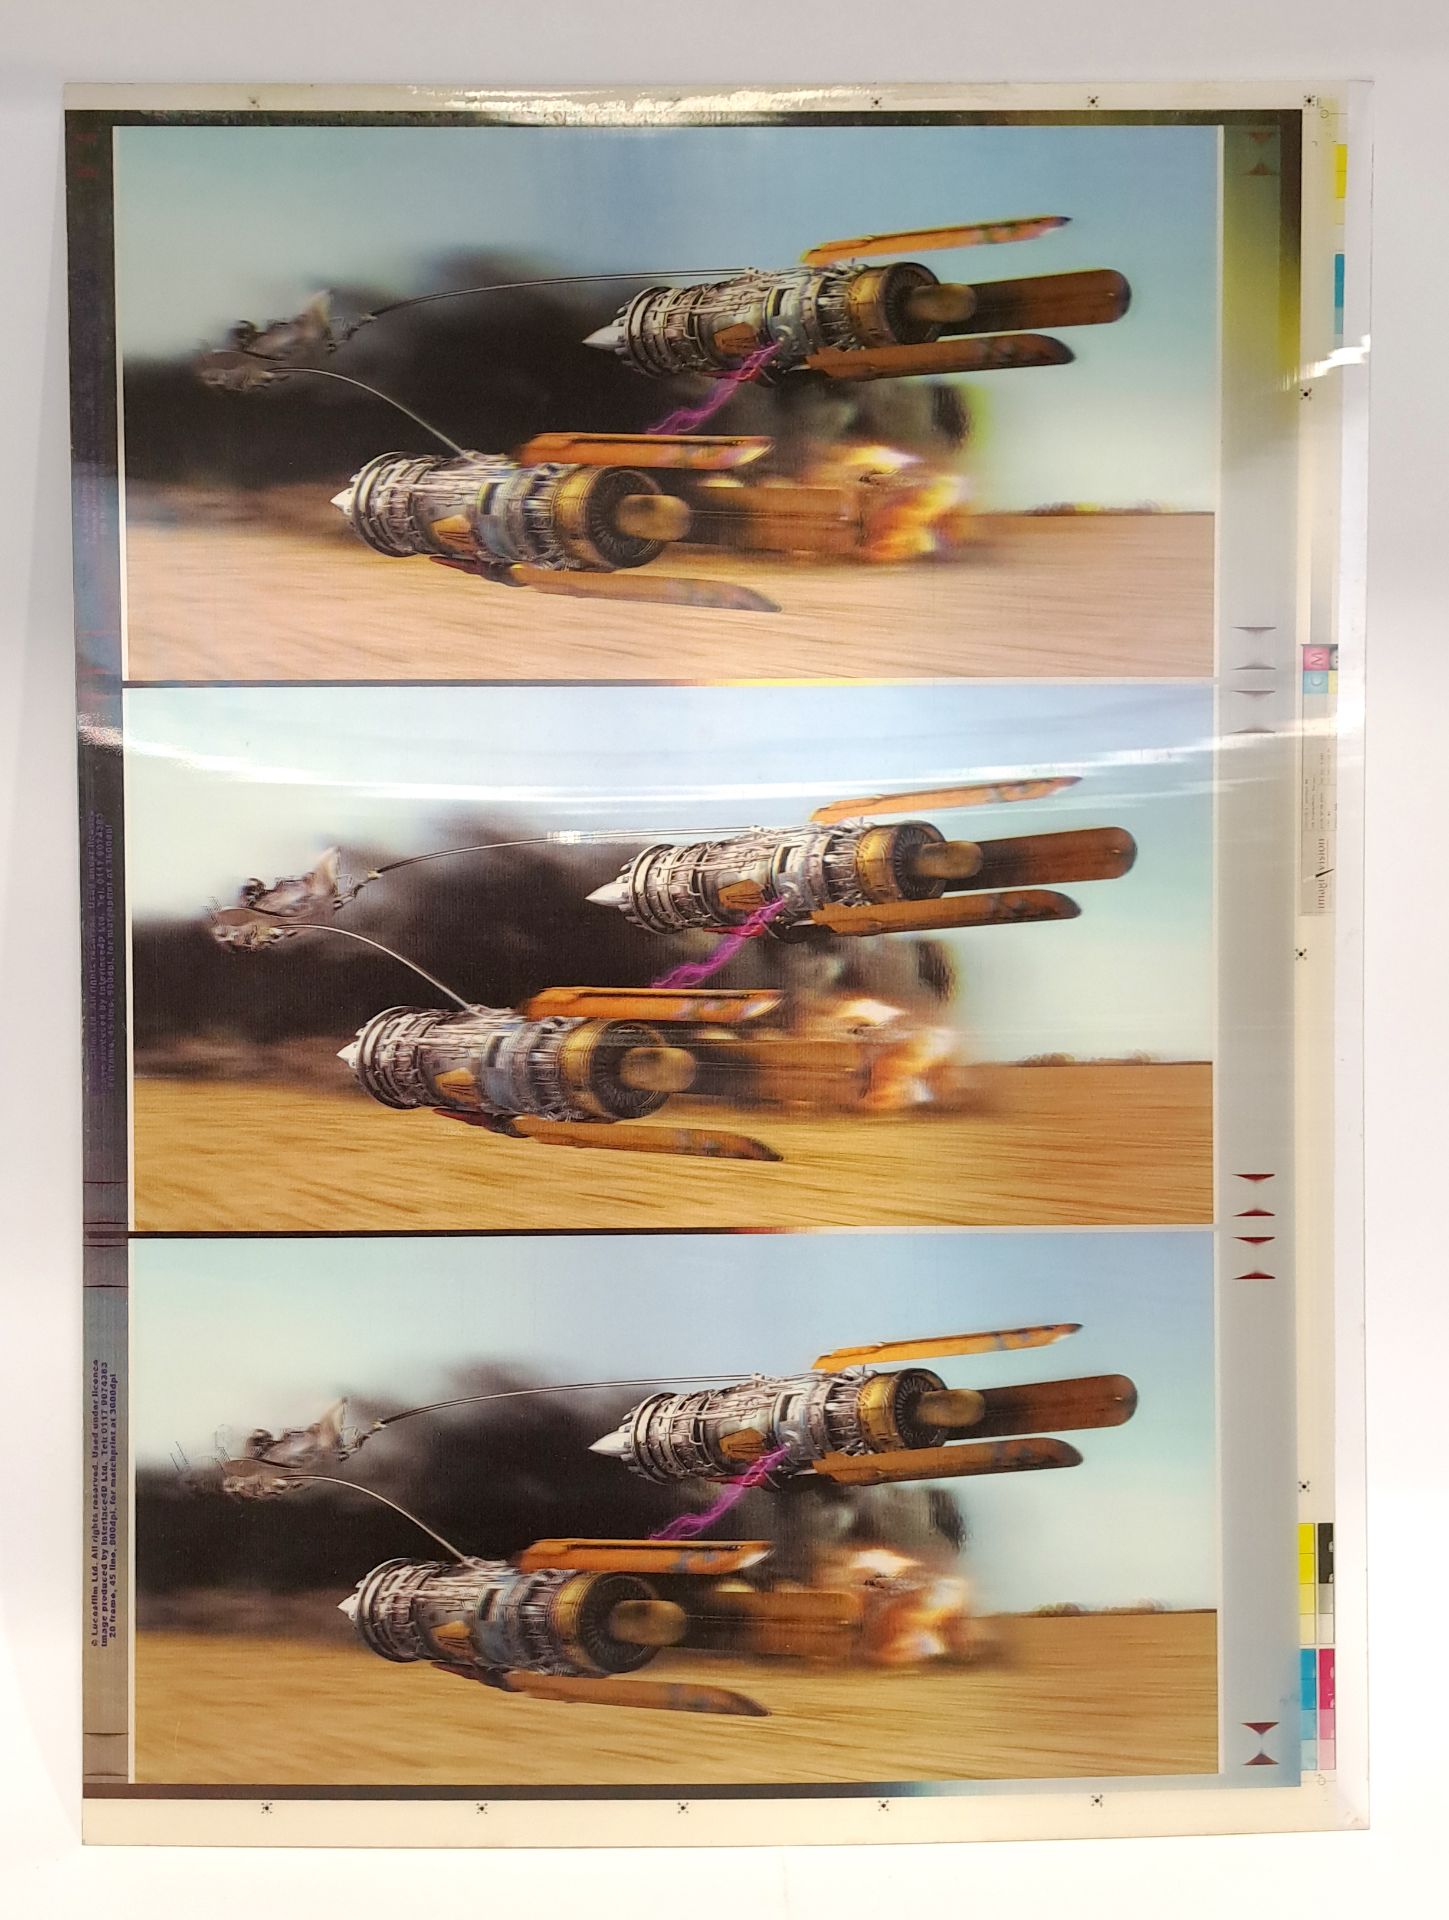 Interlace 4D Ltd Star Wars Episode I 3D Podracer Vinyl Uncut Prototype Sheet. 1 of 3